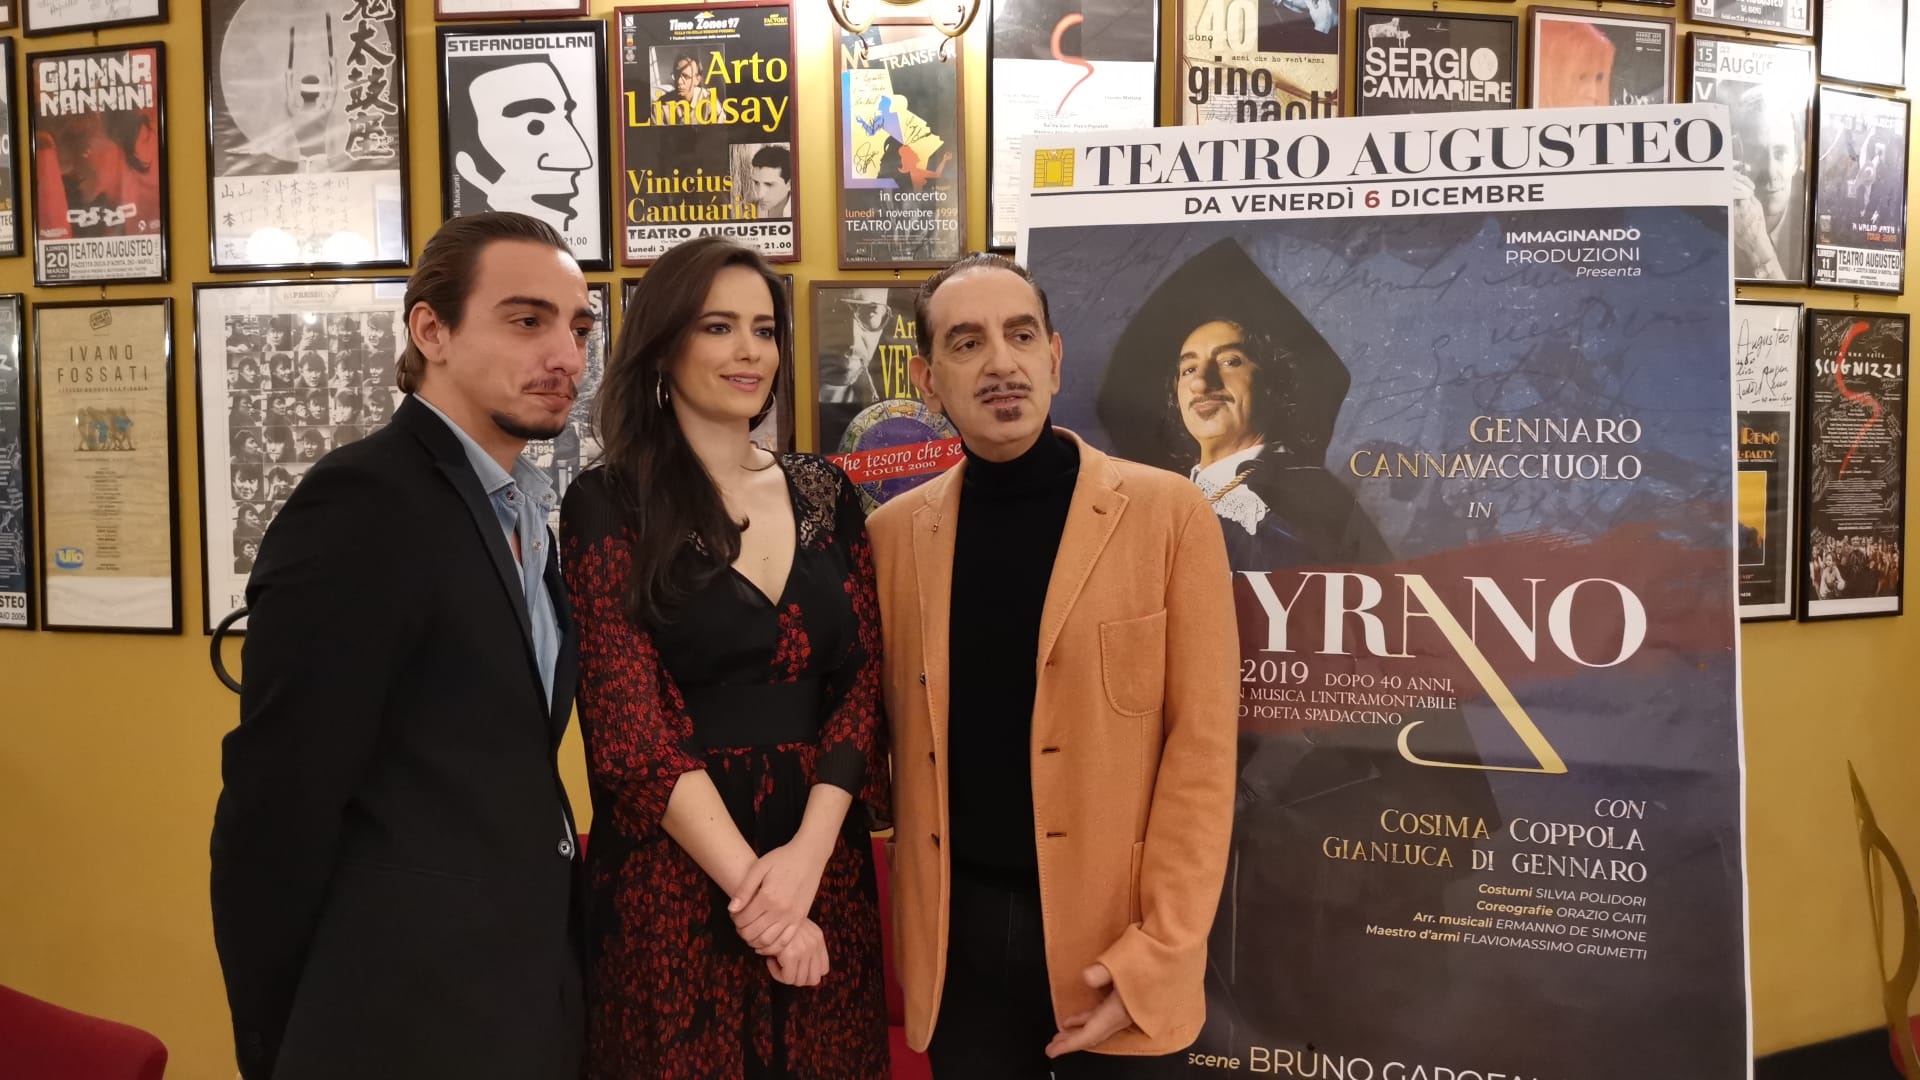 Il ‘Cyrano’ di Modugno ritorna in scena dopo 40 anni al Teatro Augusteo di Napoli